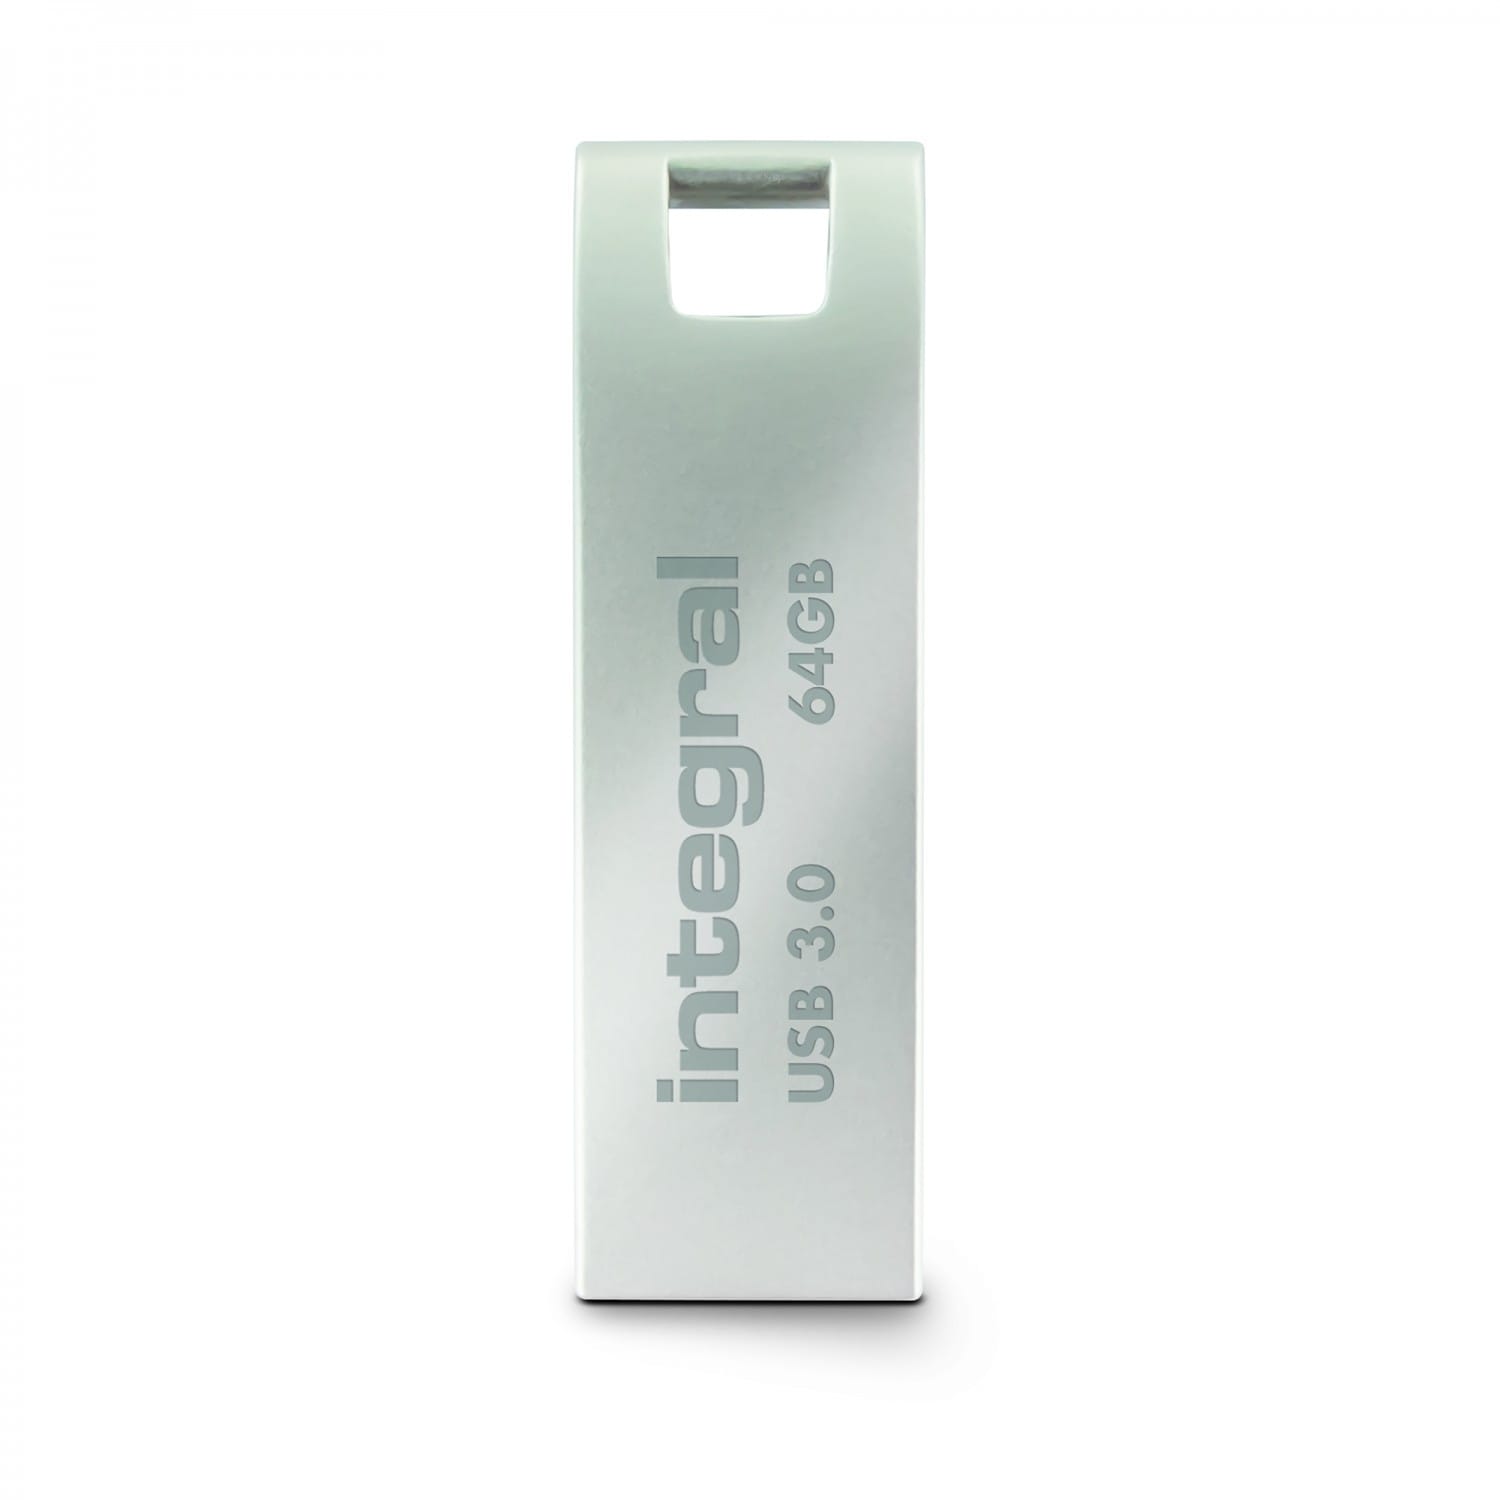 INTEGRAL MEMORY Clé USB 3.0 Fusion - 16 Go - Métal